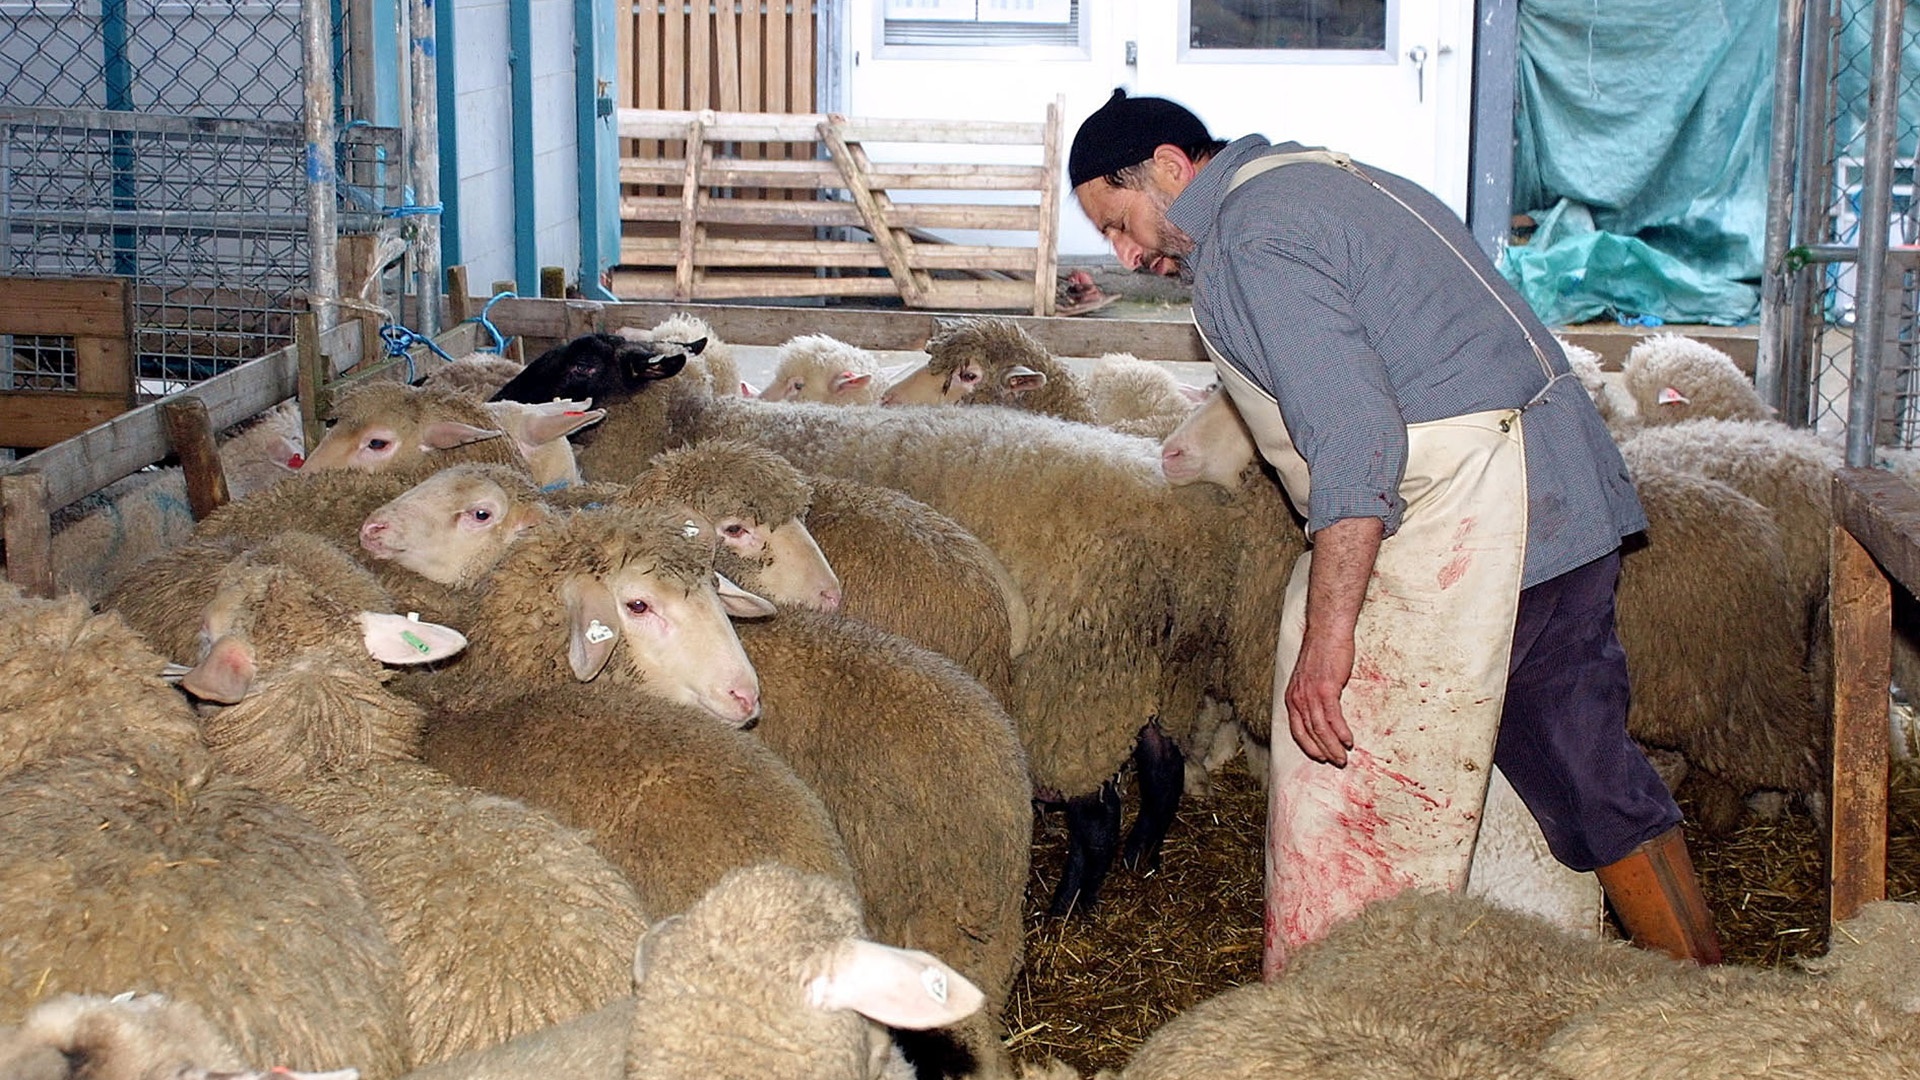 Metzer umrundet von Schafen im Stall